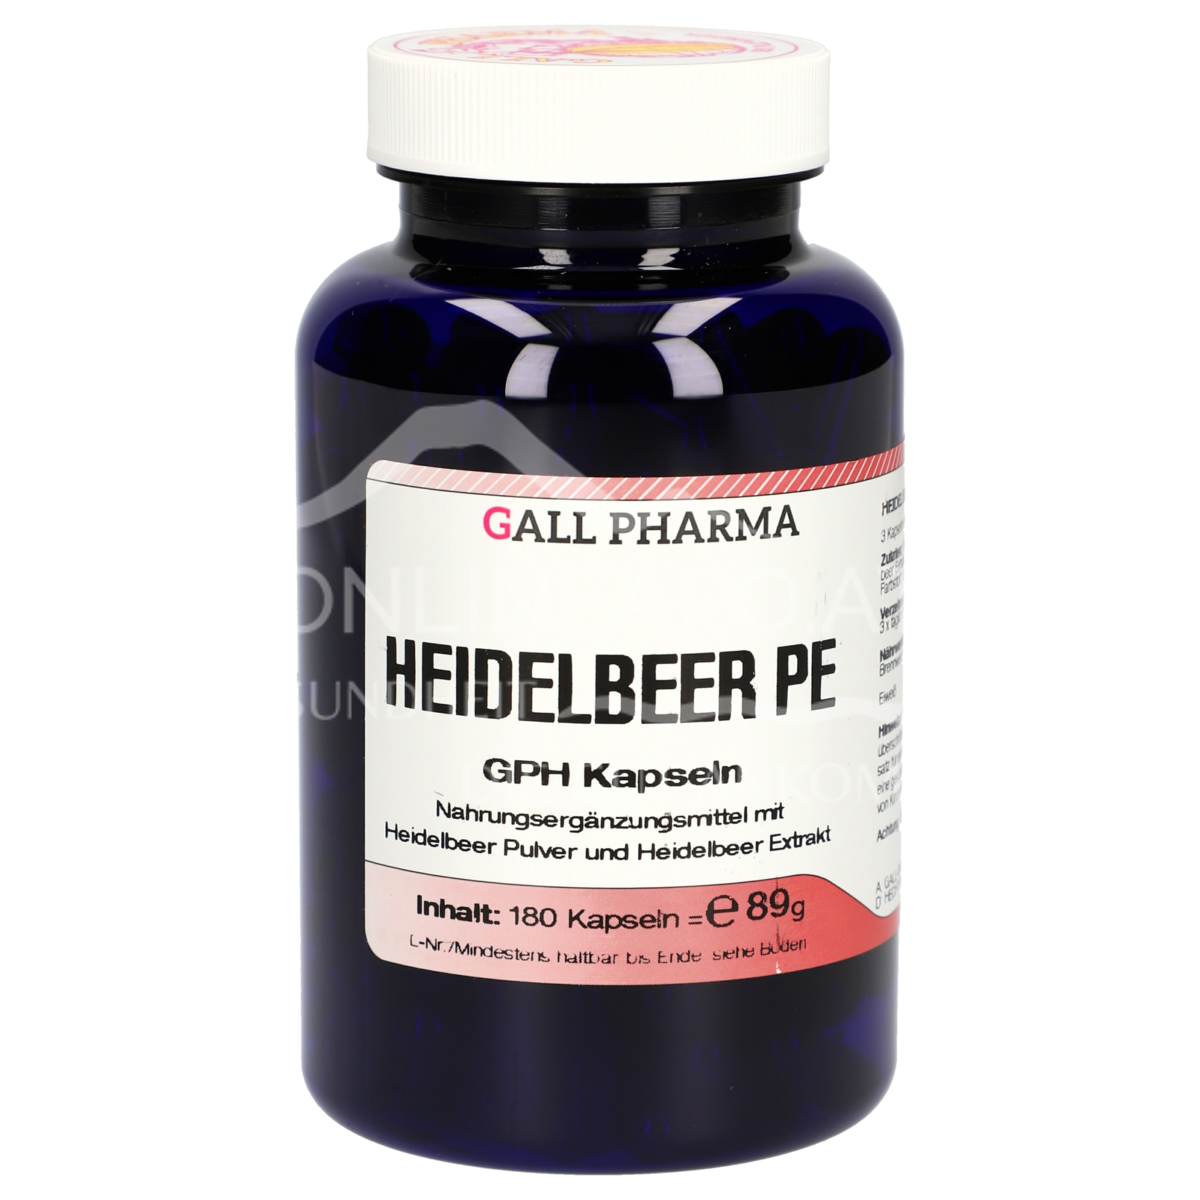 Gall Pharma Heidelbeer Extrakt + Pulver Kapseln